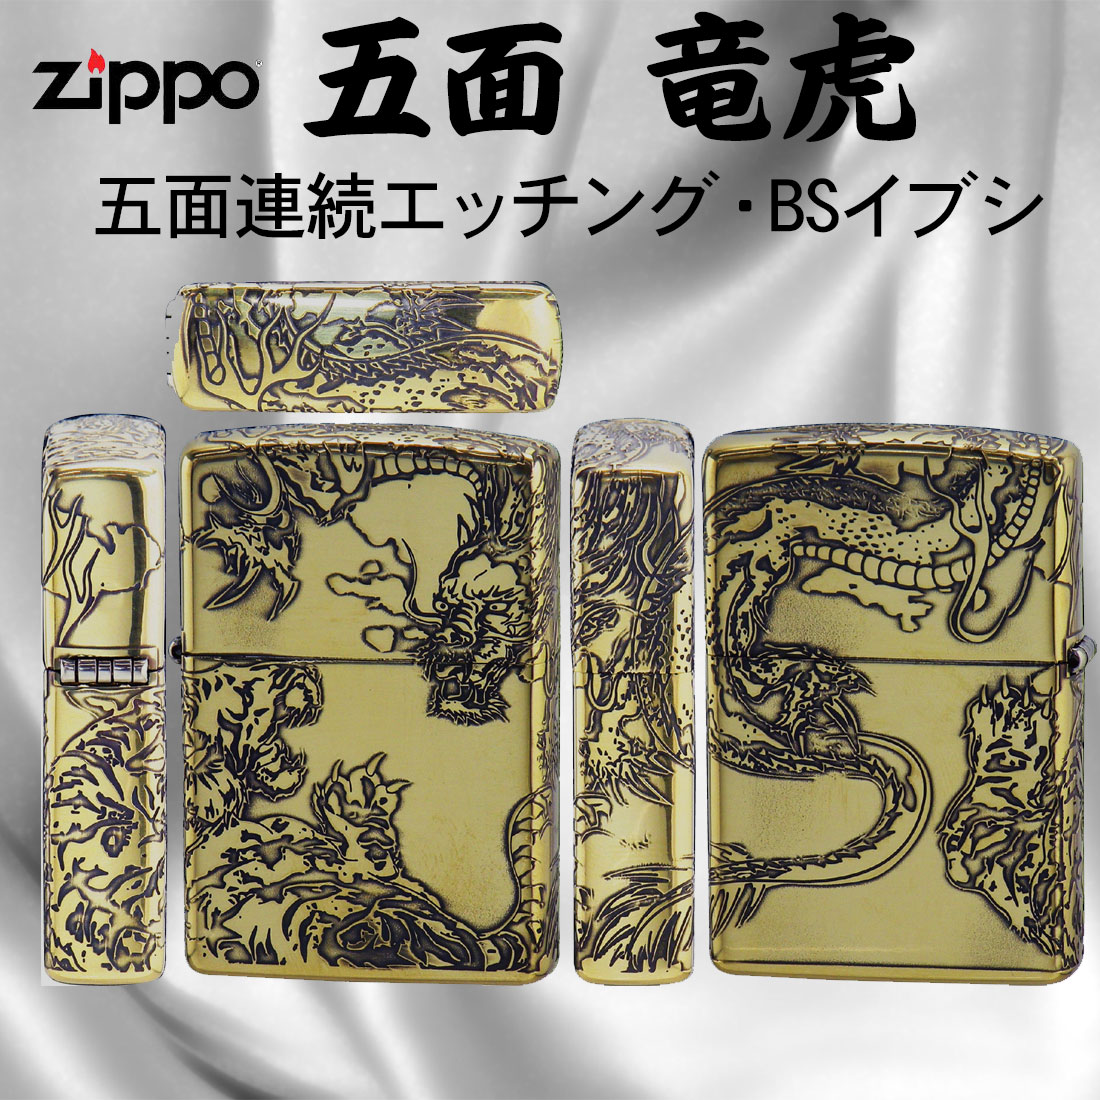 ZIPPO[ジッポー]五面加工 ZP 五面龍虎 BS イブシ - 喫煙具、ライター